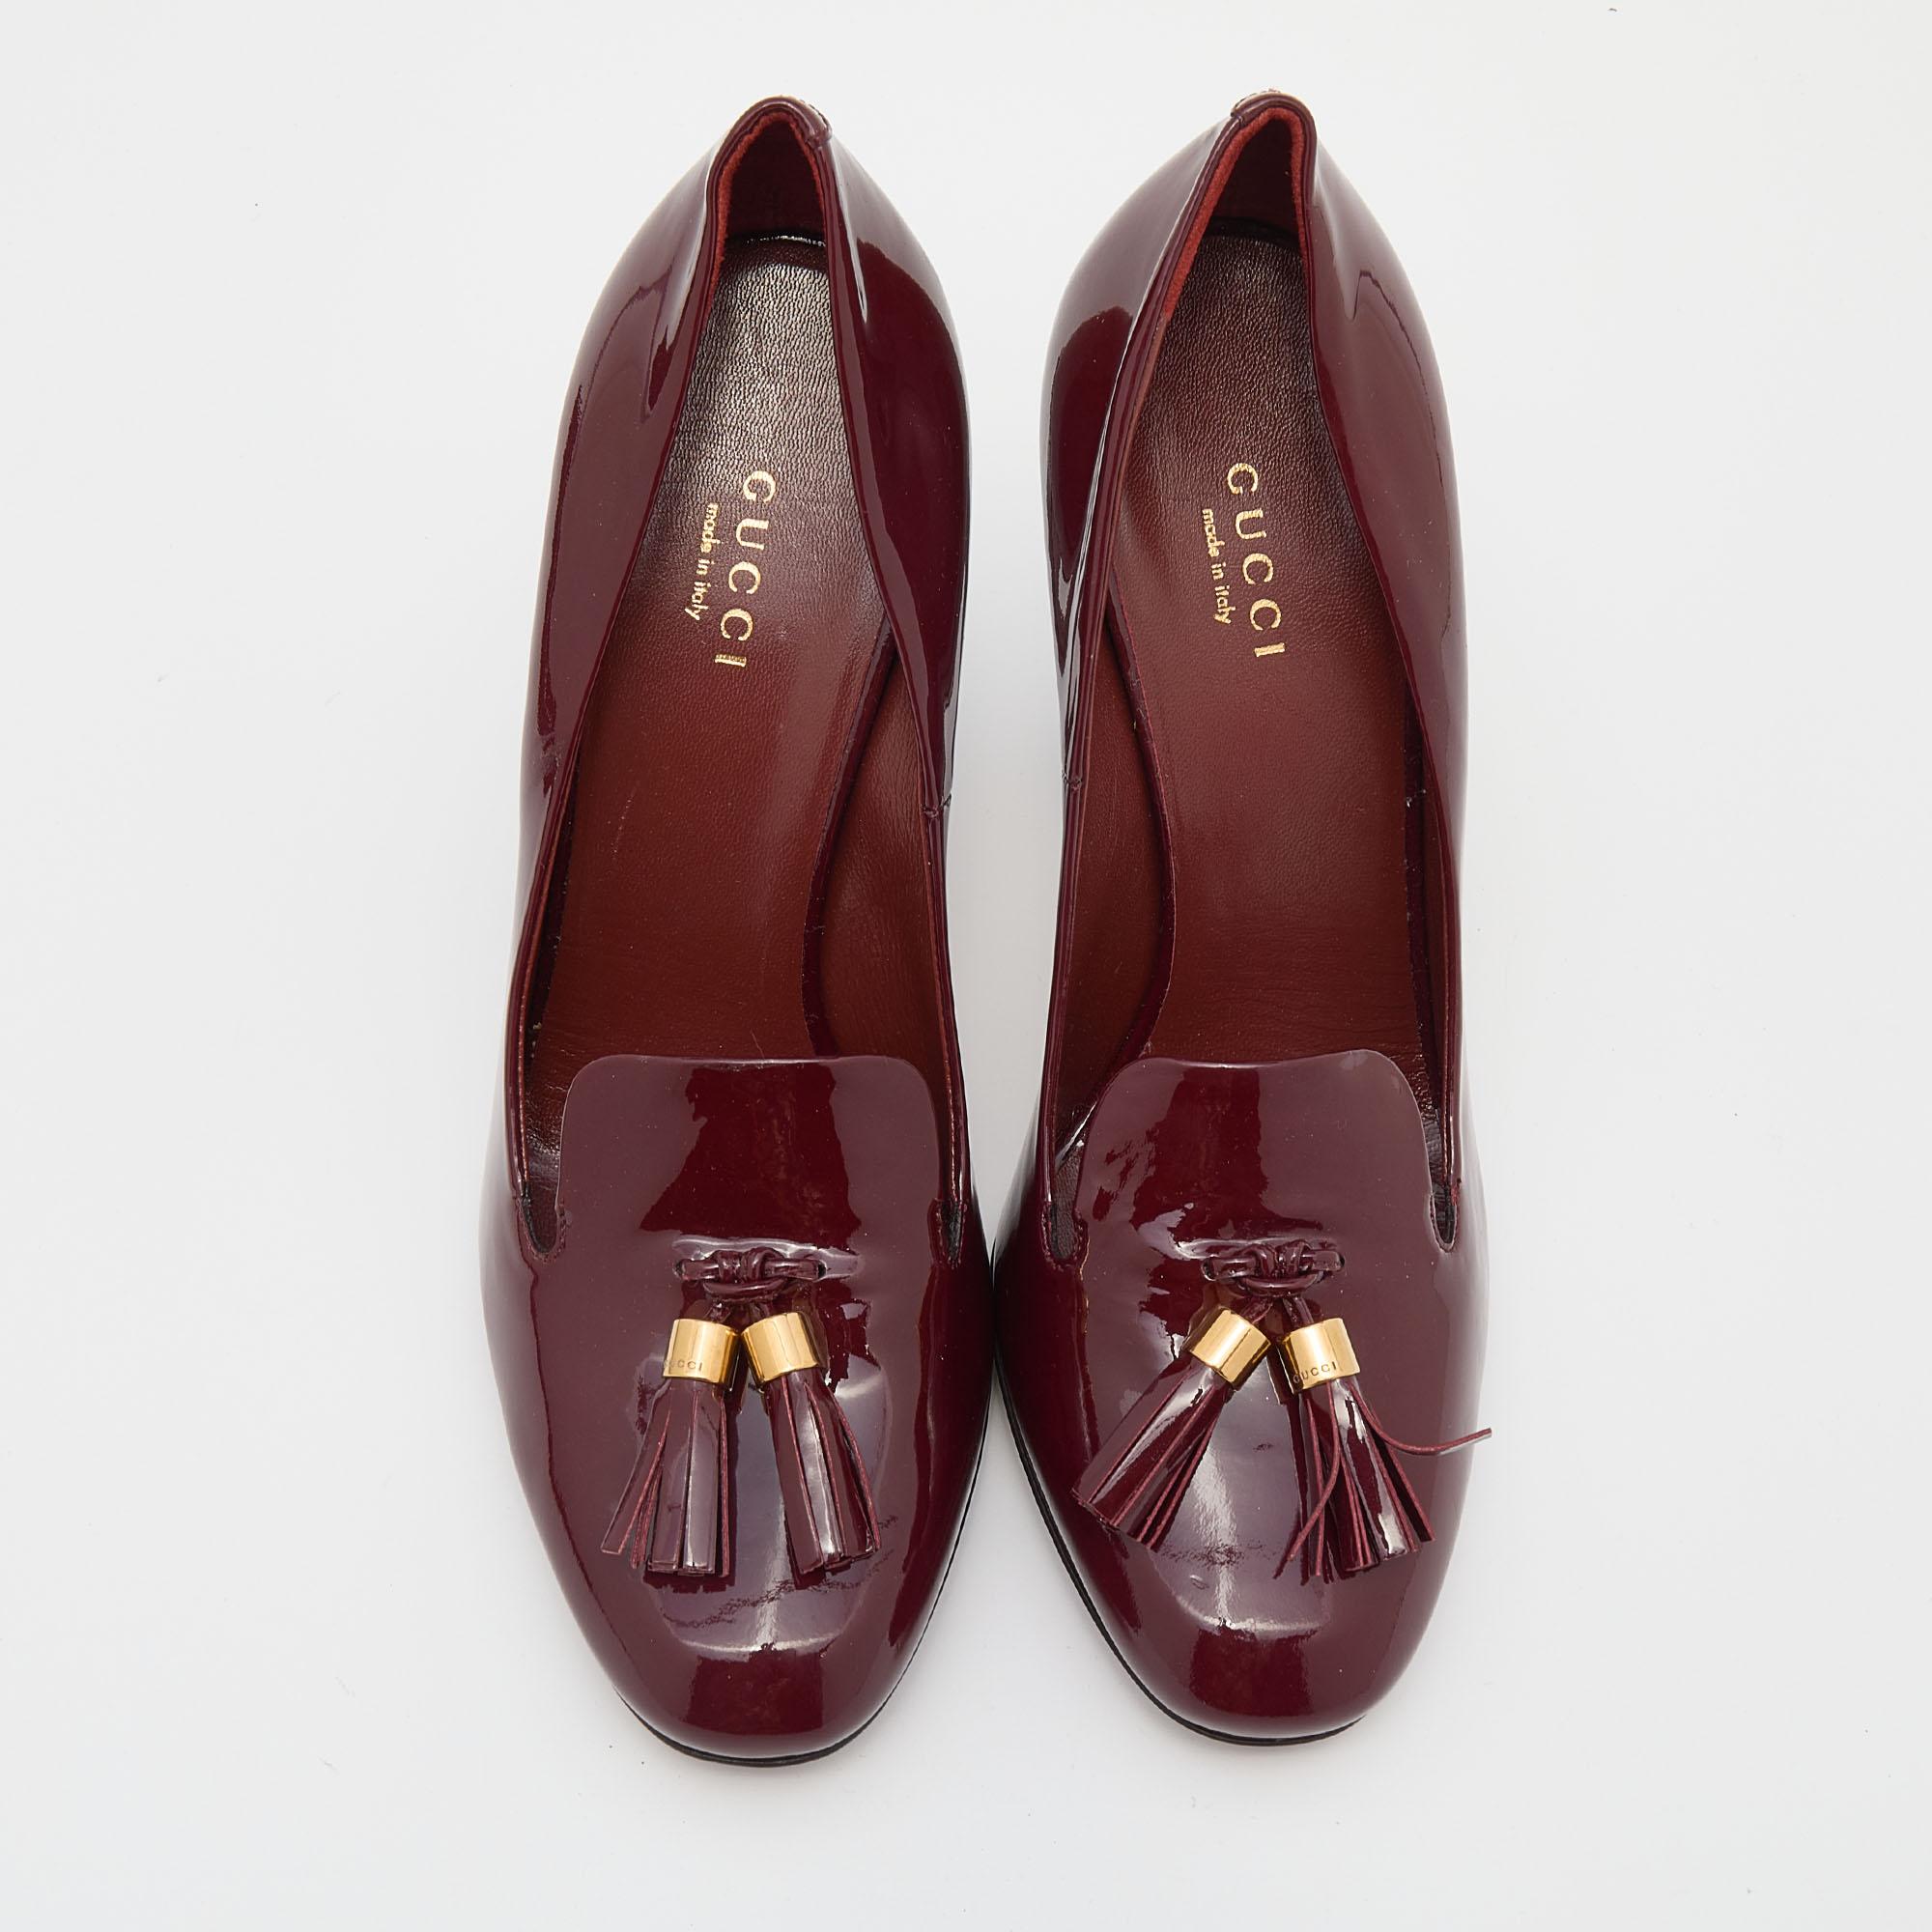 burgundy shoes heels